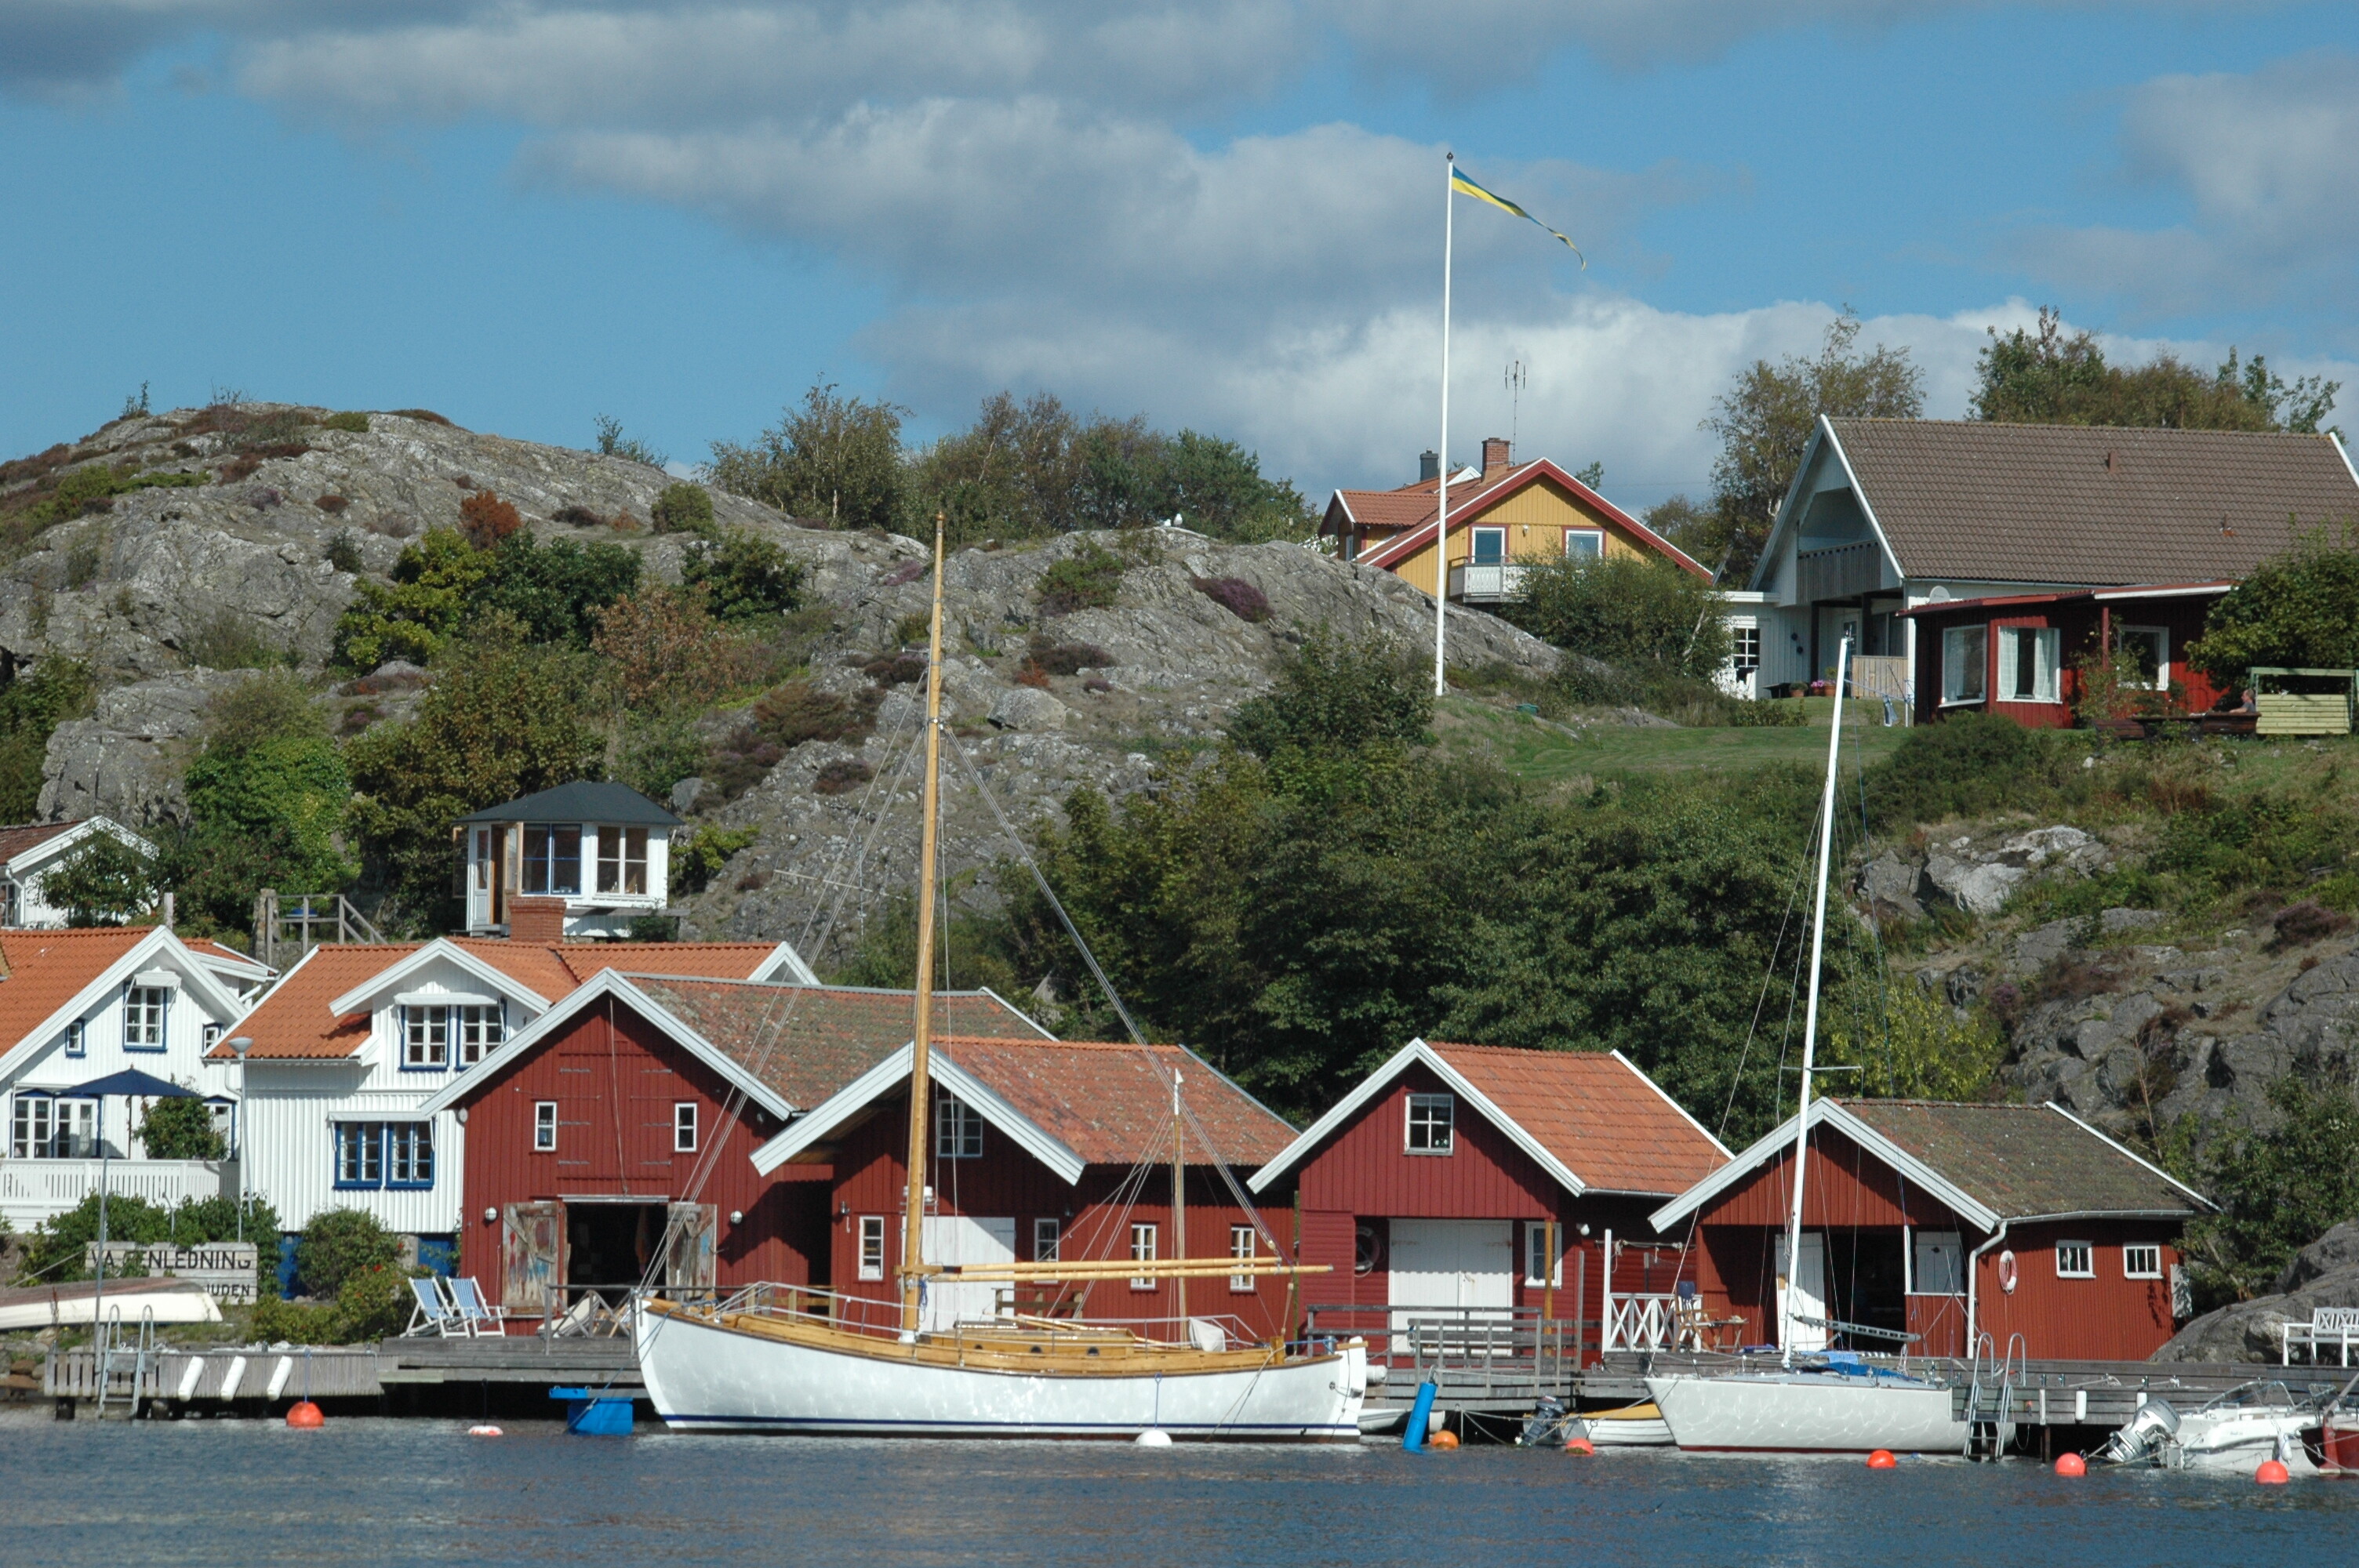 Typische rote Häuser in Schweden am Wasser mit dem Boot und einer schwedischer Flagge